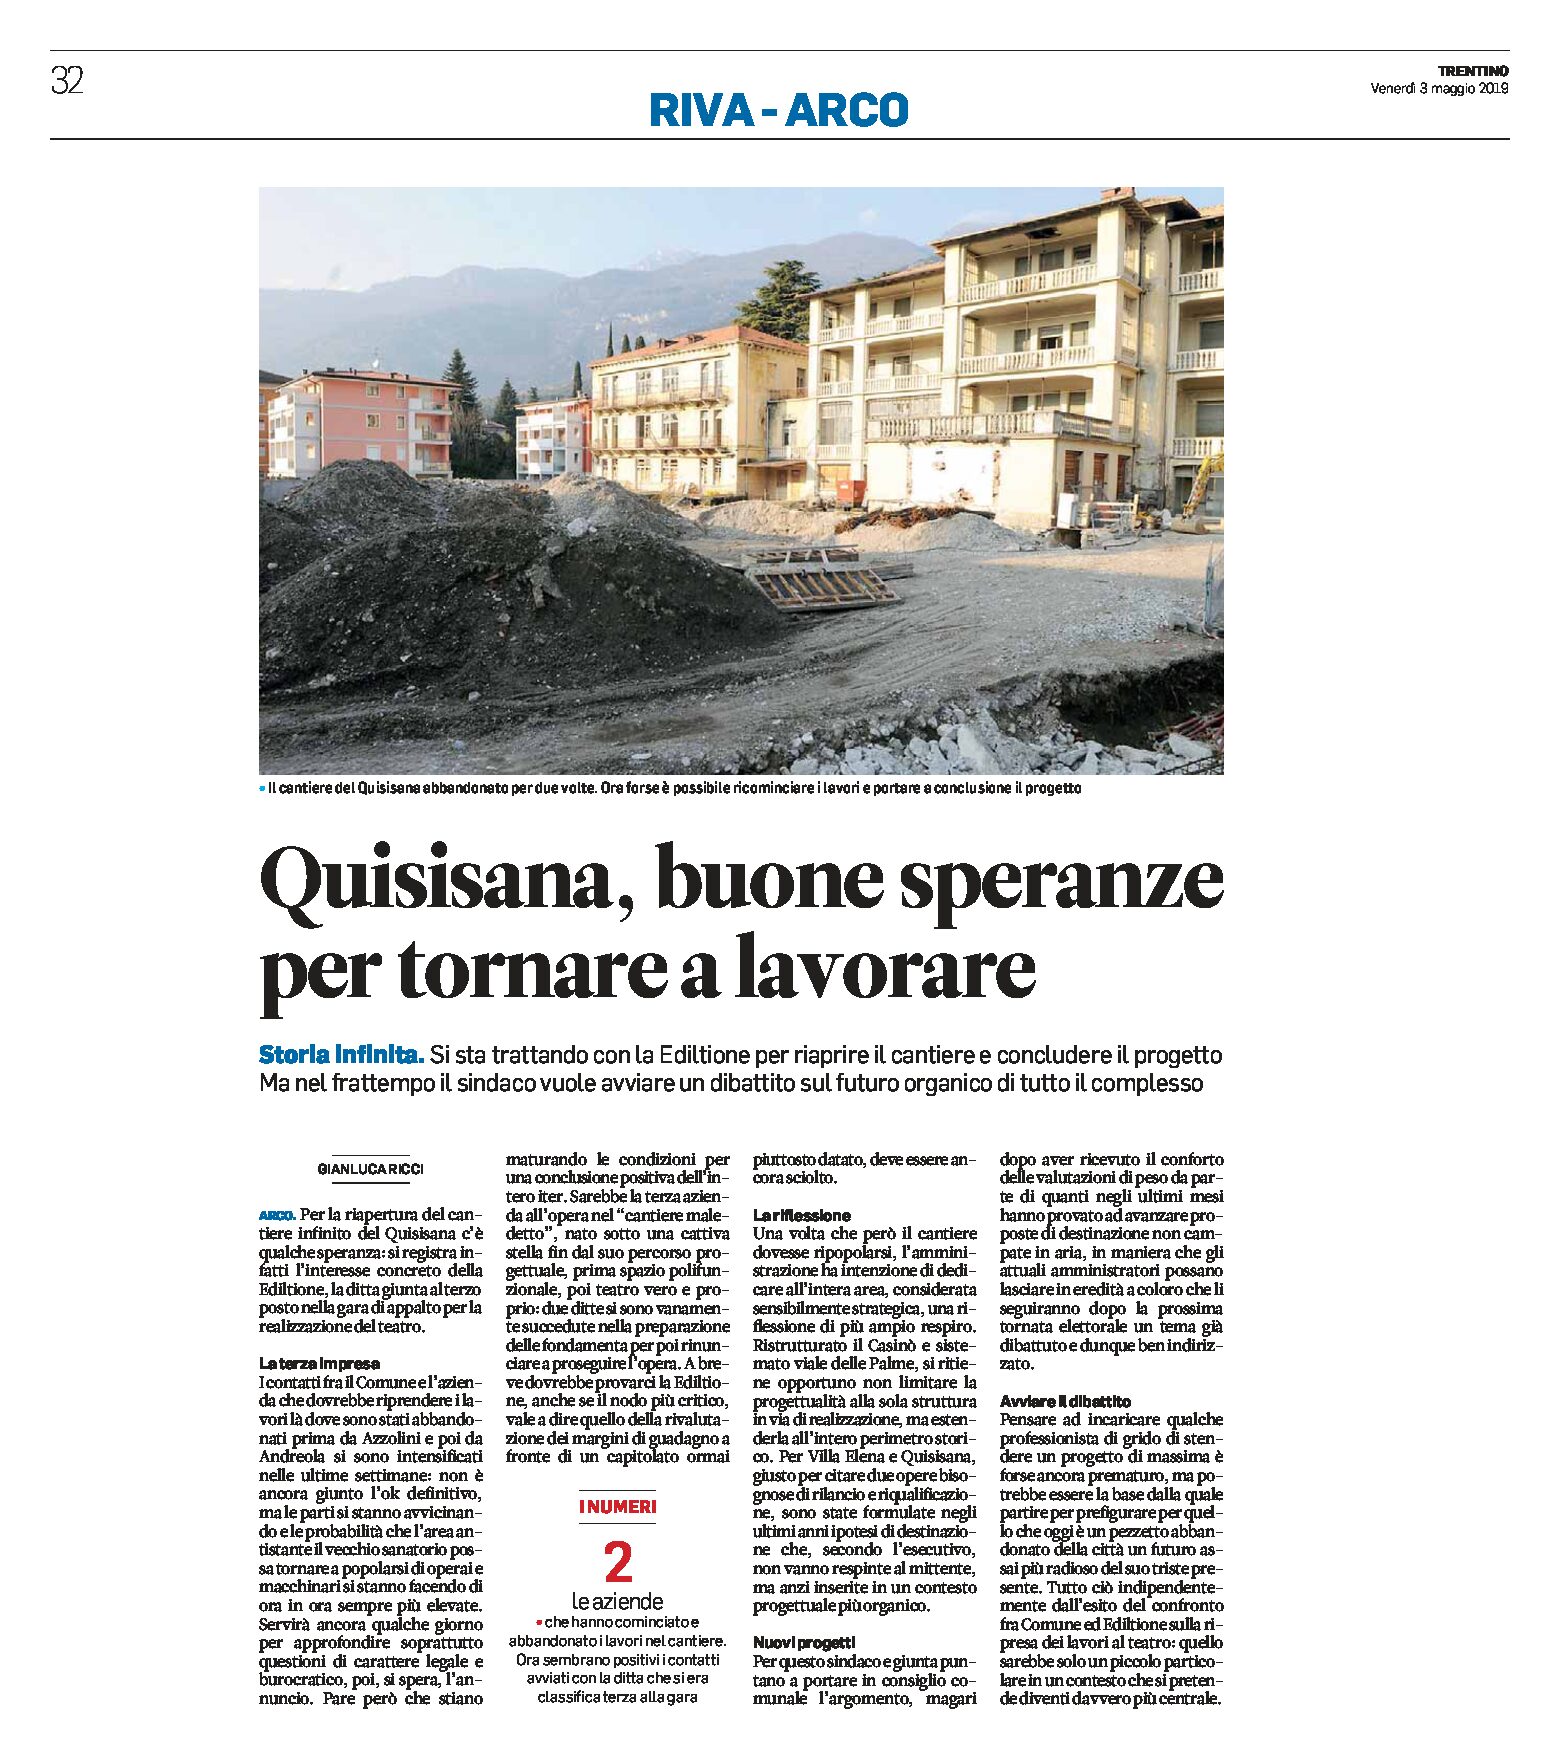 Arco, Quisisana: buone speranze per la riapertura del cantiere